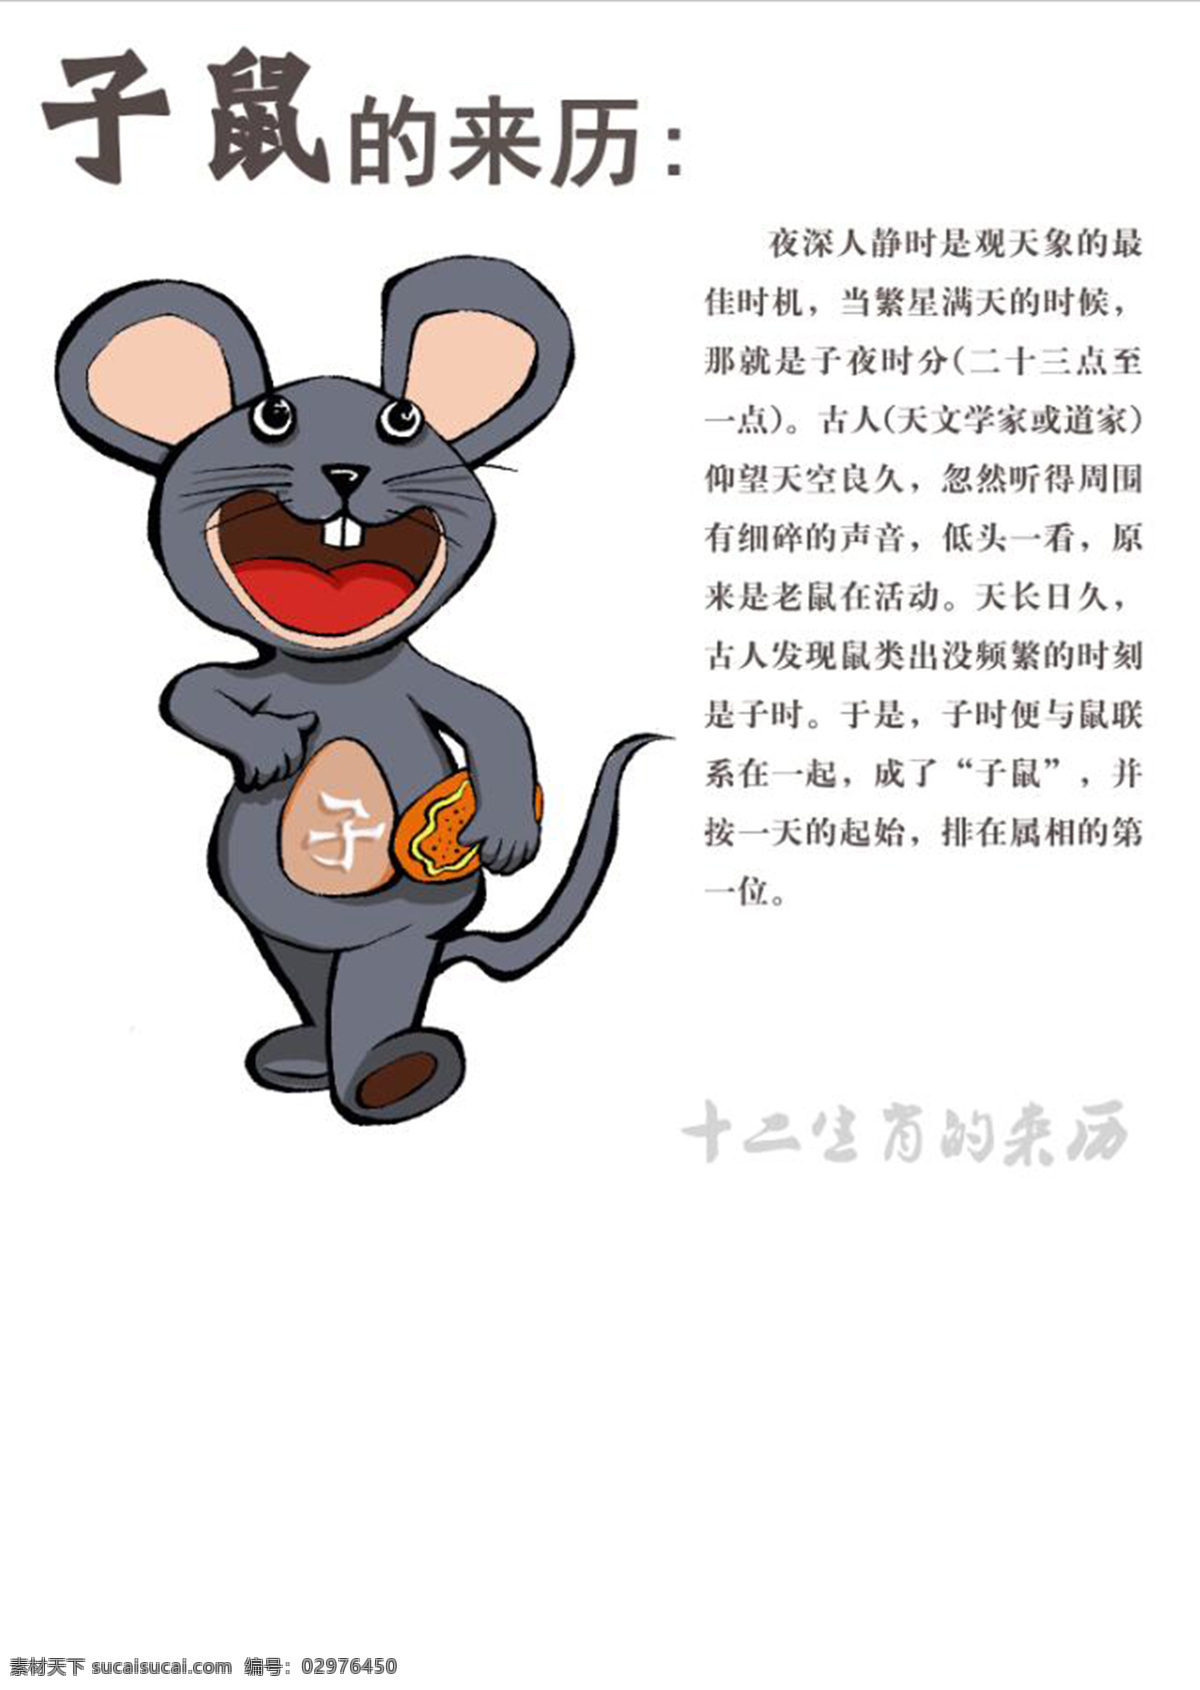 十二生肖 之子 鼠 子鼠 卡通形象 插画 动漫动画 动漫人物